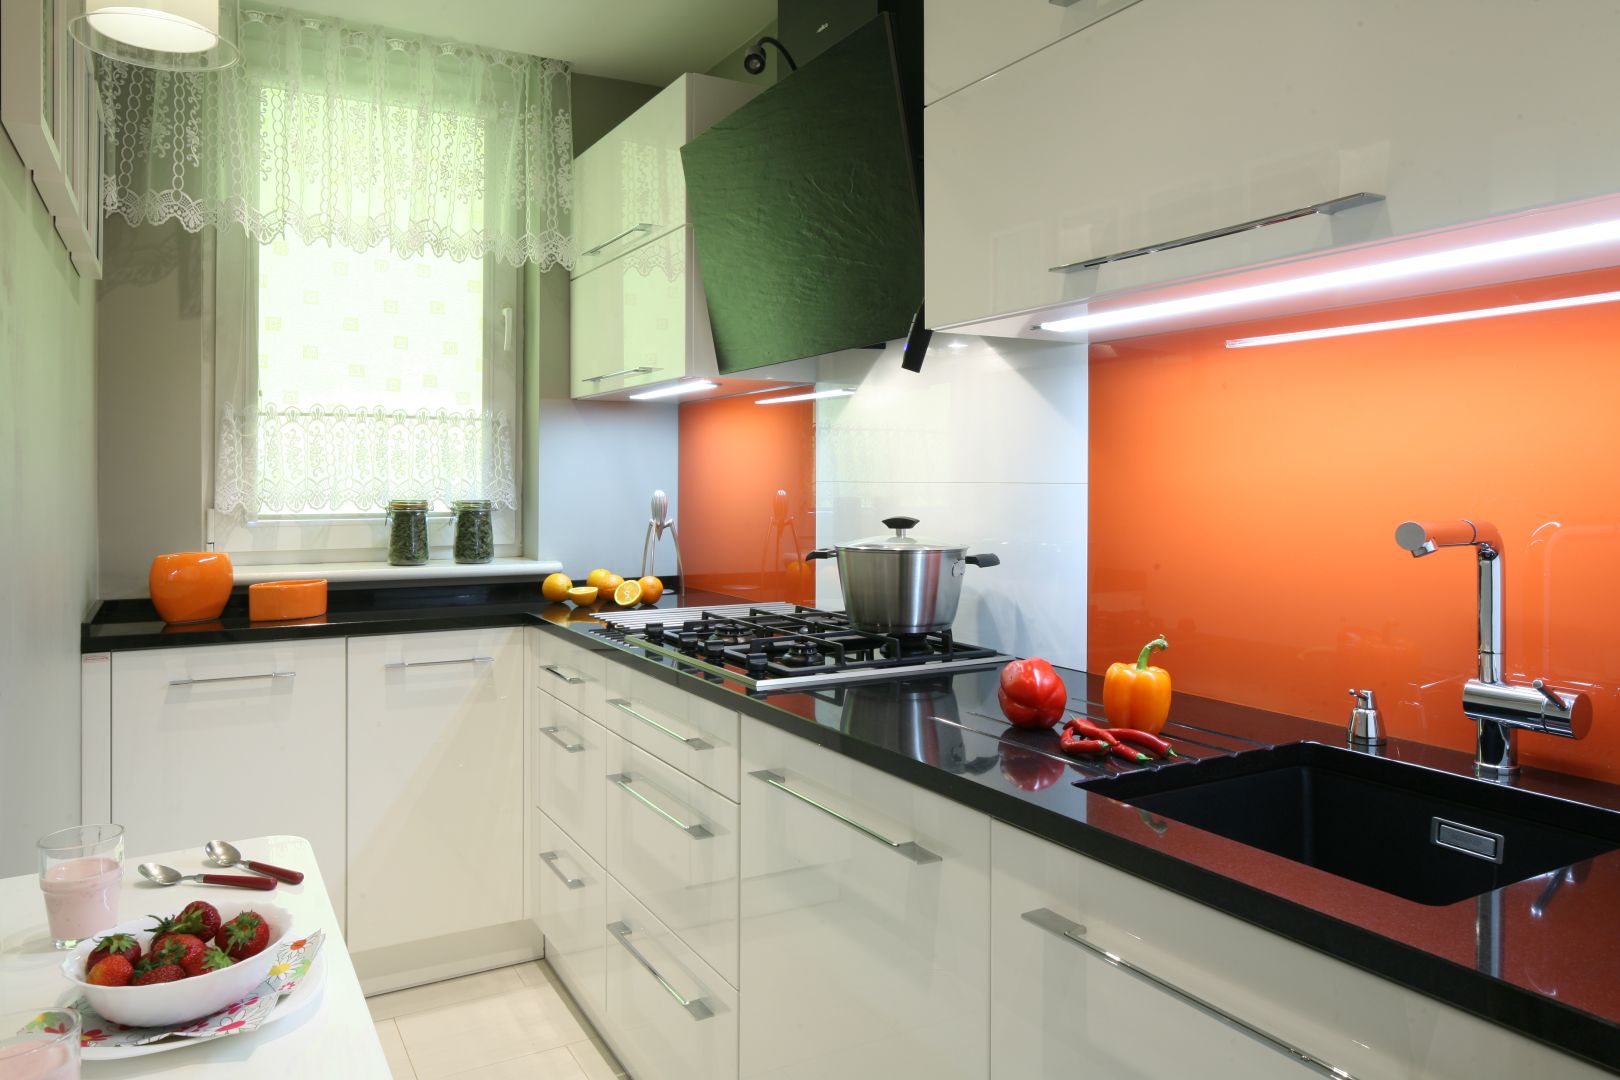 Wąską zamkniętą kuchnię urządzono niezwykle praktycznie, a przy tym elegancko. Kolor pomarańczy efektownie ożywił białą aranżację. Projekt Studio Śląskie Kuchnie. Fot. Bartosz Jarosz.